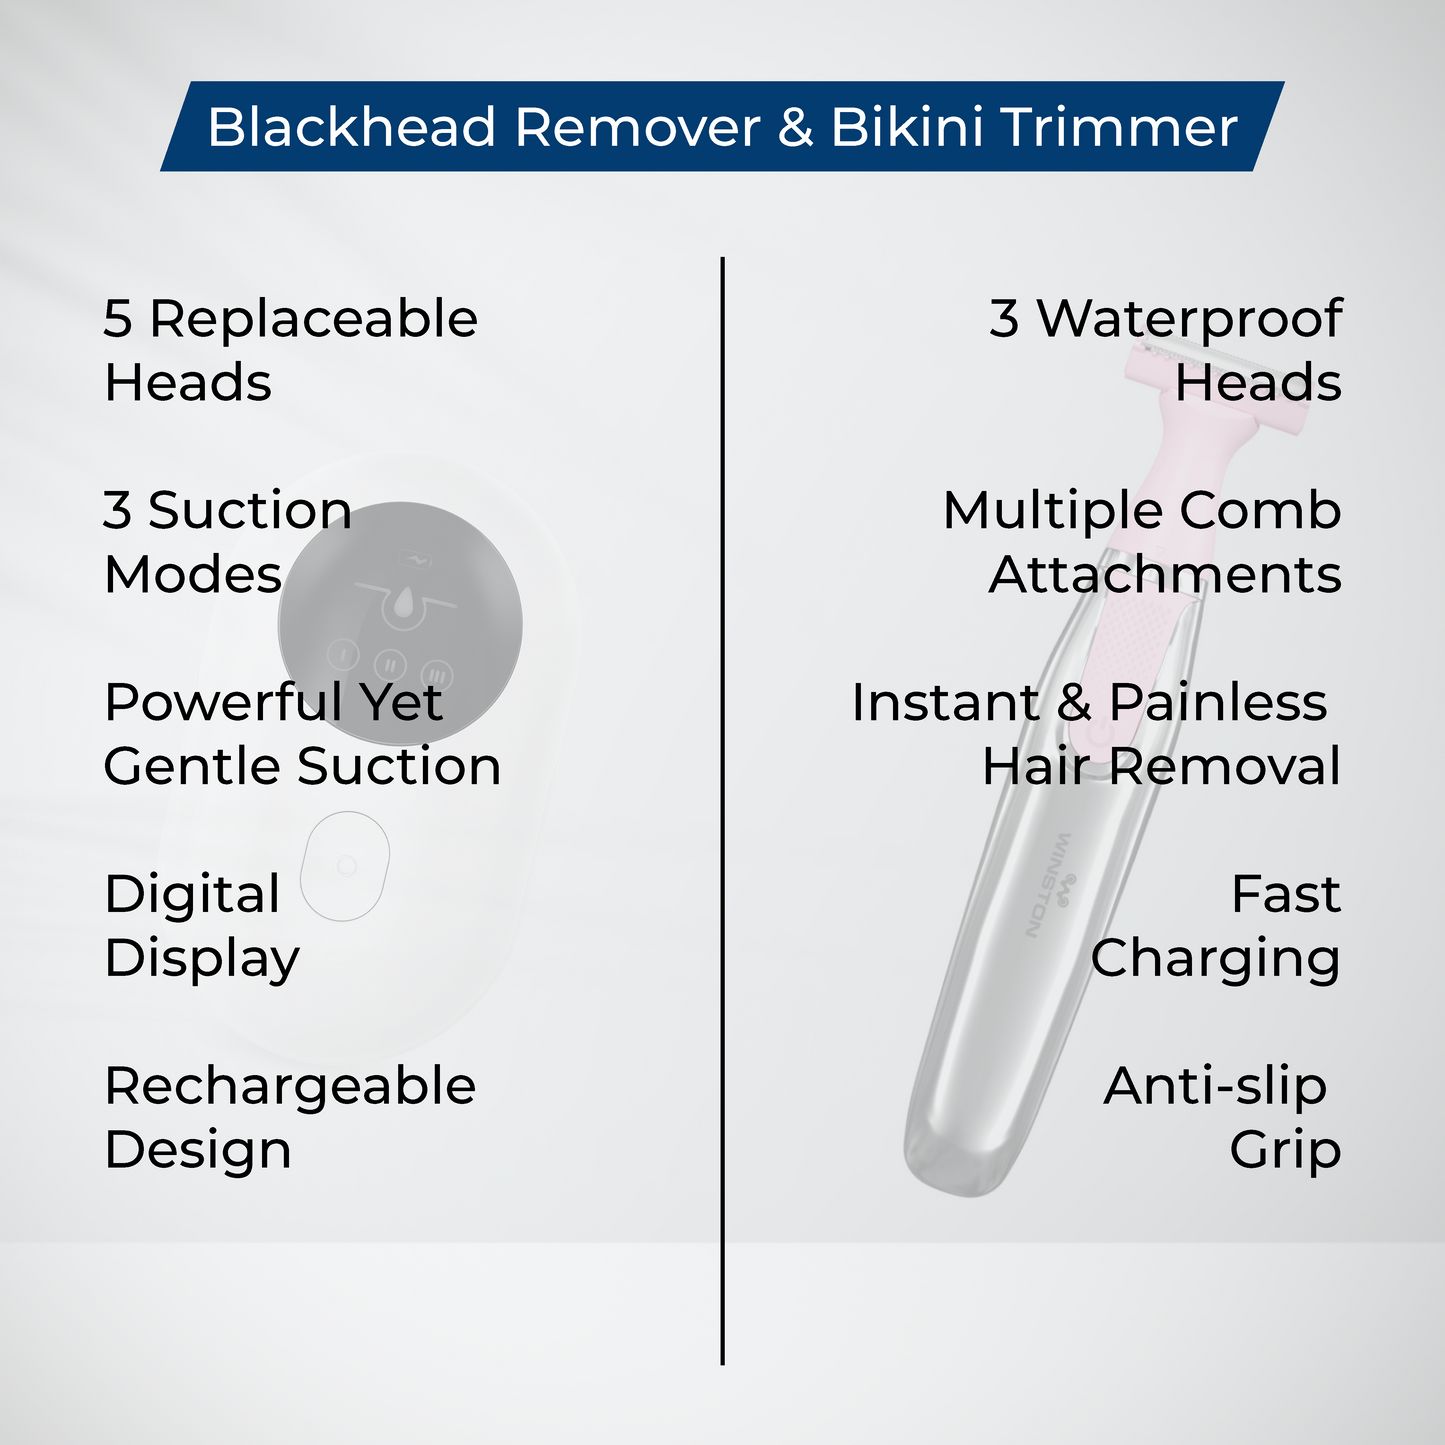 Blackhead Remover & Bikini Trimmer Combo